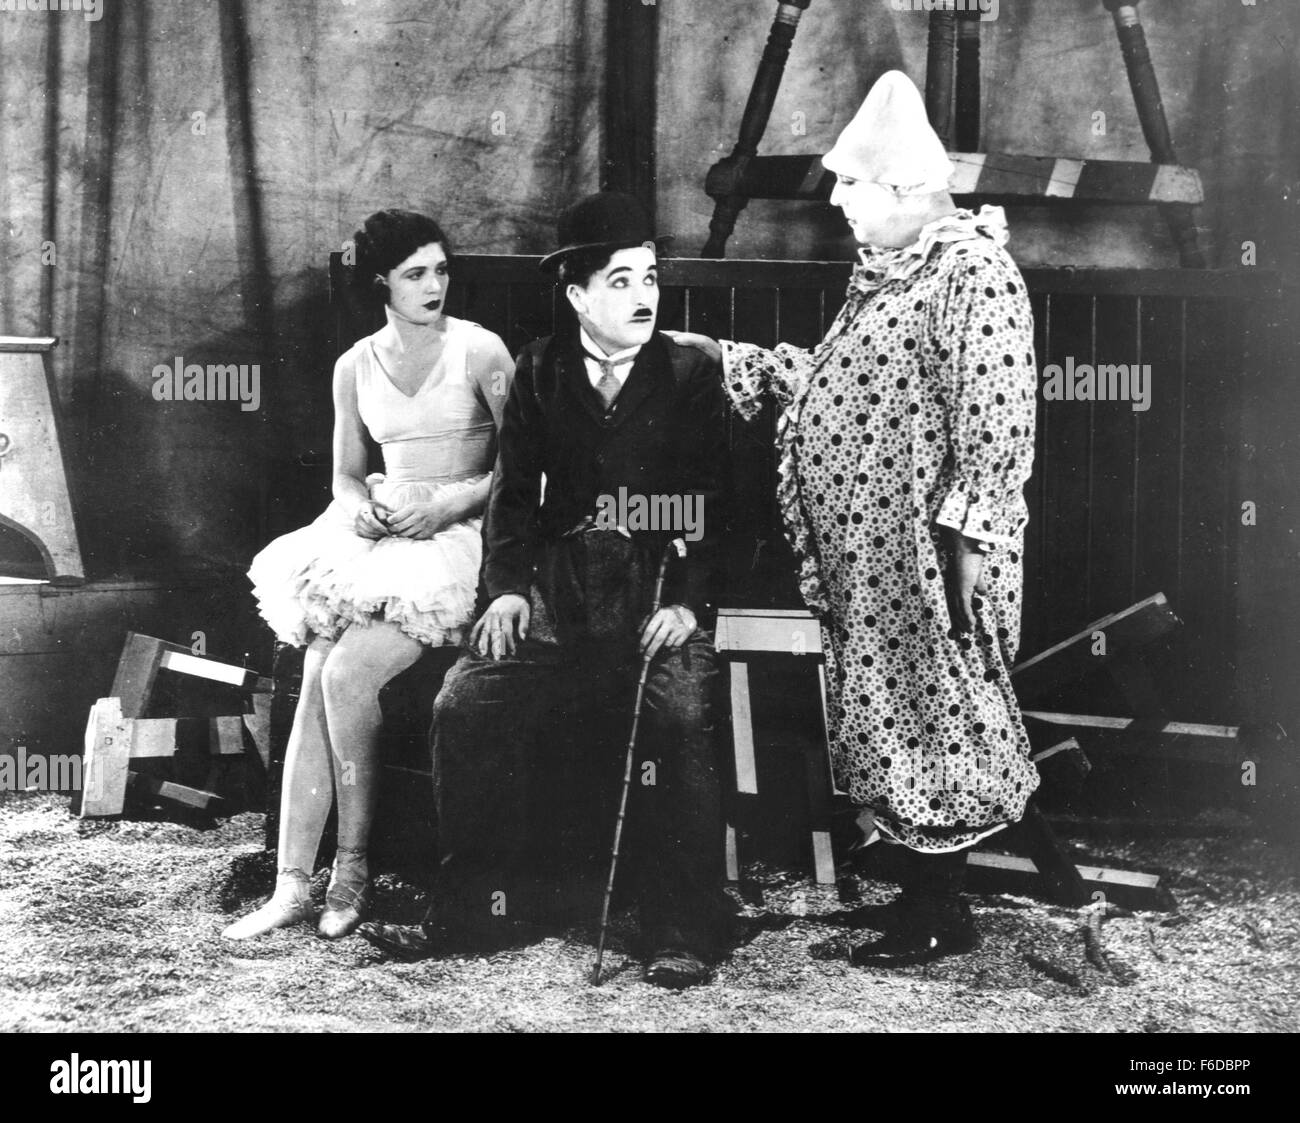 Erscheinungsdatum: 6. Januar 1928. FILMTITEL: Der Zirkus. STUDIO: Charles Chaplin-Produktionen. PLOT: Charlie Tramp Charakter sich in einem Zirkus findet, wo ist er prompt bekommt um von der Polizei gejagt, die denken, dass er ein Taschendieb. Läuft in der Bigtop, ist er ein versehentliches Gefühl mit seinen lustigen Bemühungen, die Polizei zu entziehen. Der Zirkusdirektor/Besitzer sofort heuert ihn, aber entdeckt, dass das Tramp mit Absicht lustig sein kann, so er nutzt die Situation nimmt mit der Tramp ein Hausmeister gerade passiert immer in der Bigtop bei Showtime. In Unkenntnis dieser Ausnutzung, fällt das Tramp f Stockfoto